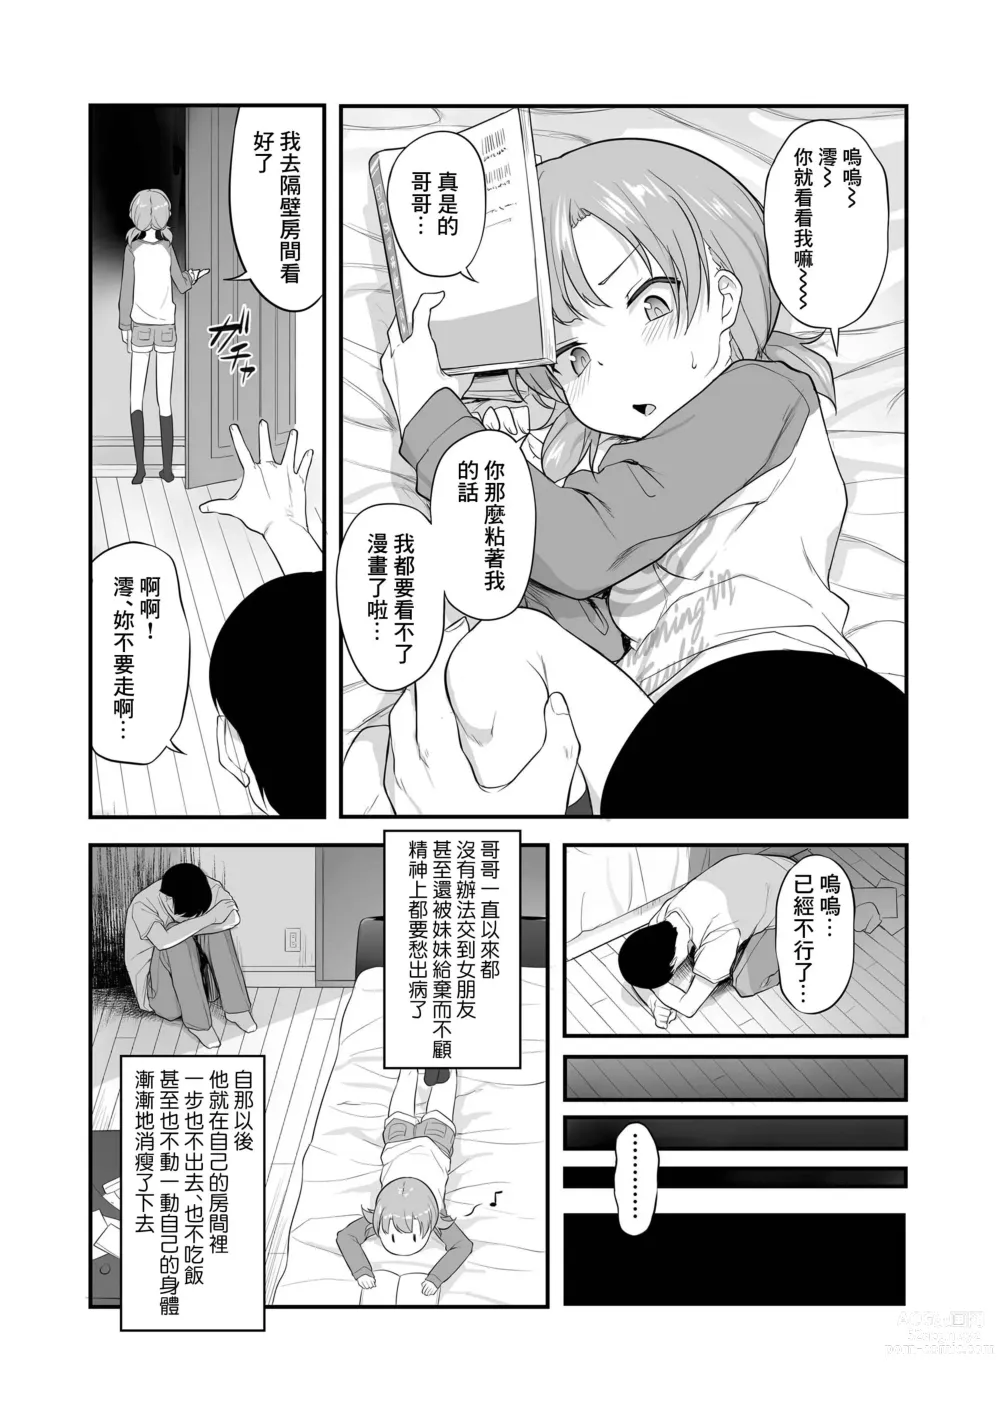 Page 3 of manga Imouto Gokoro to Haru no Sora